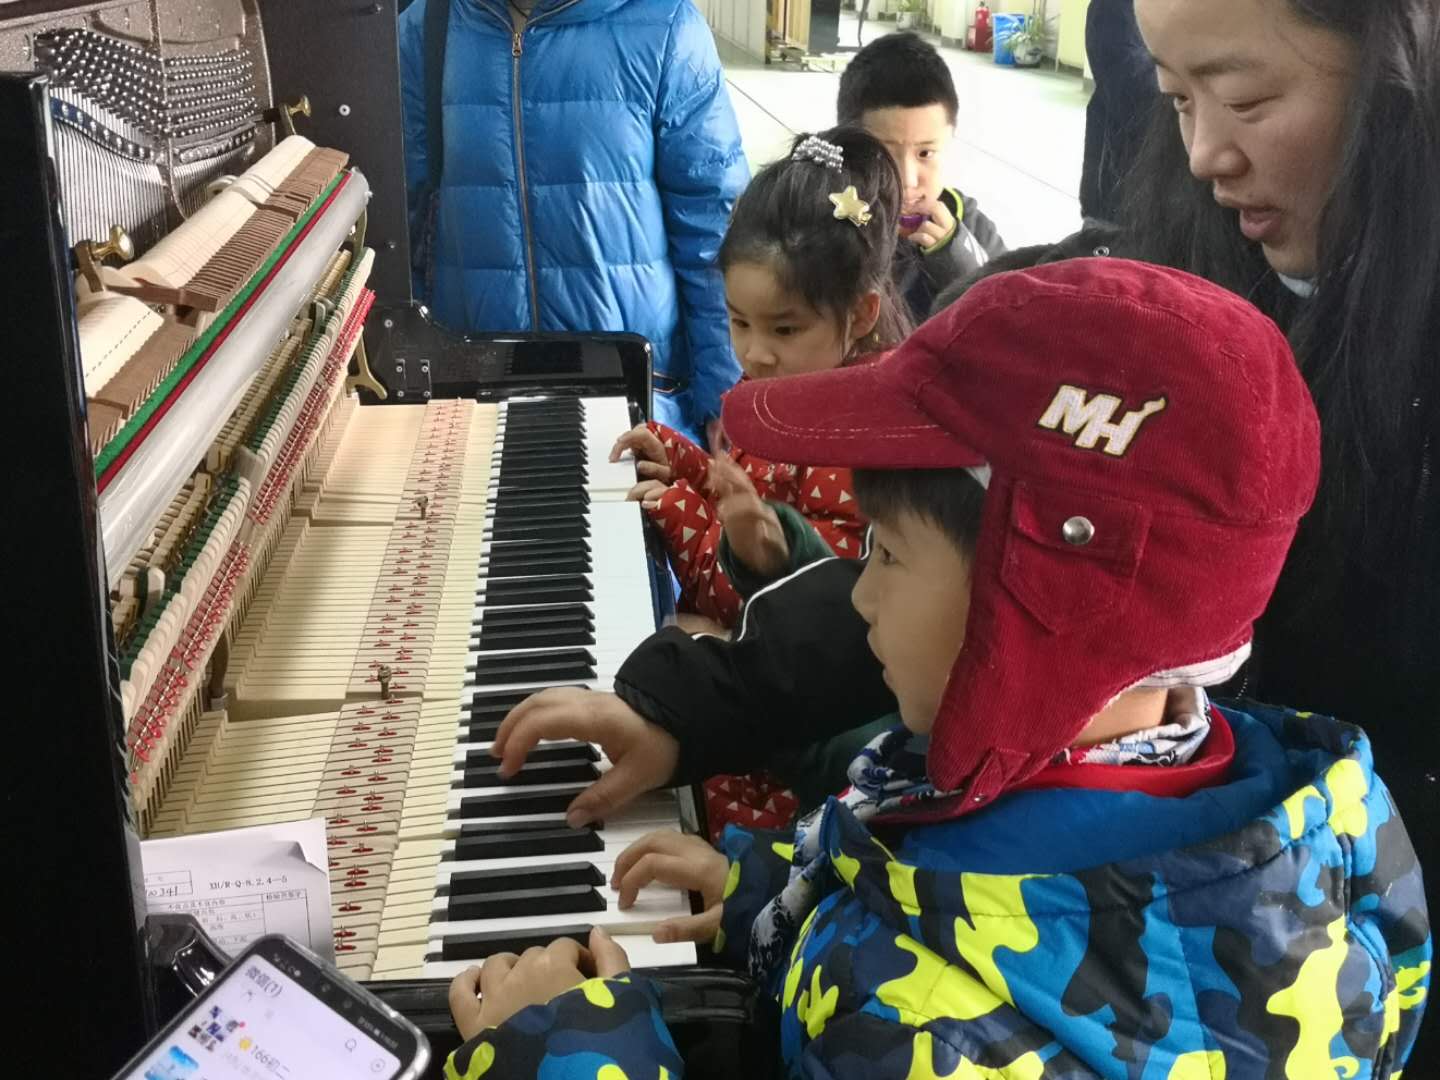 北京星海钢琴集团有限公司